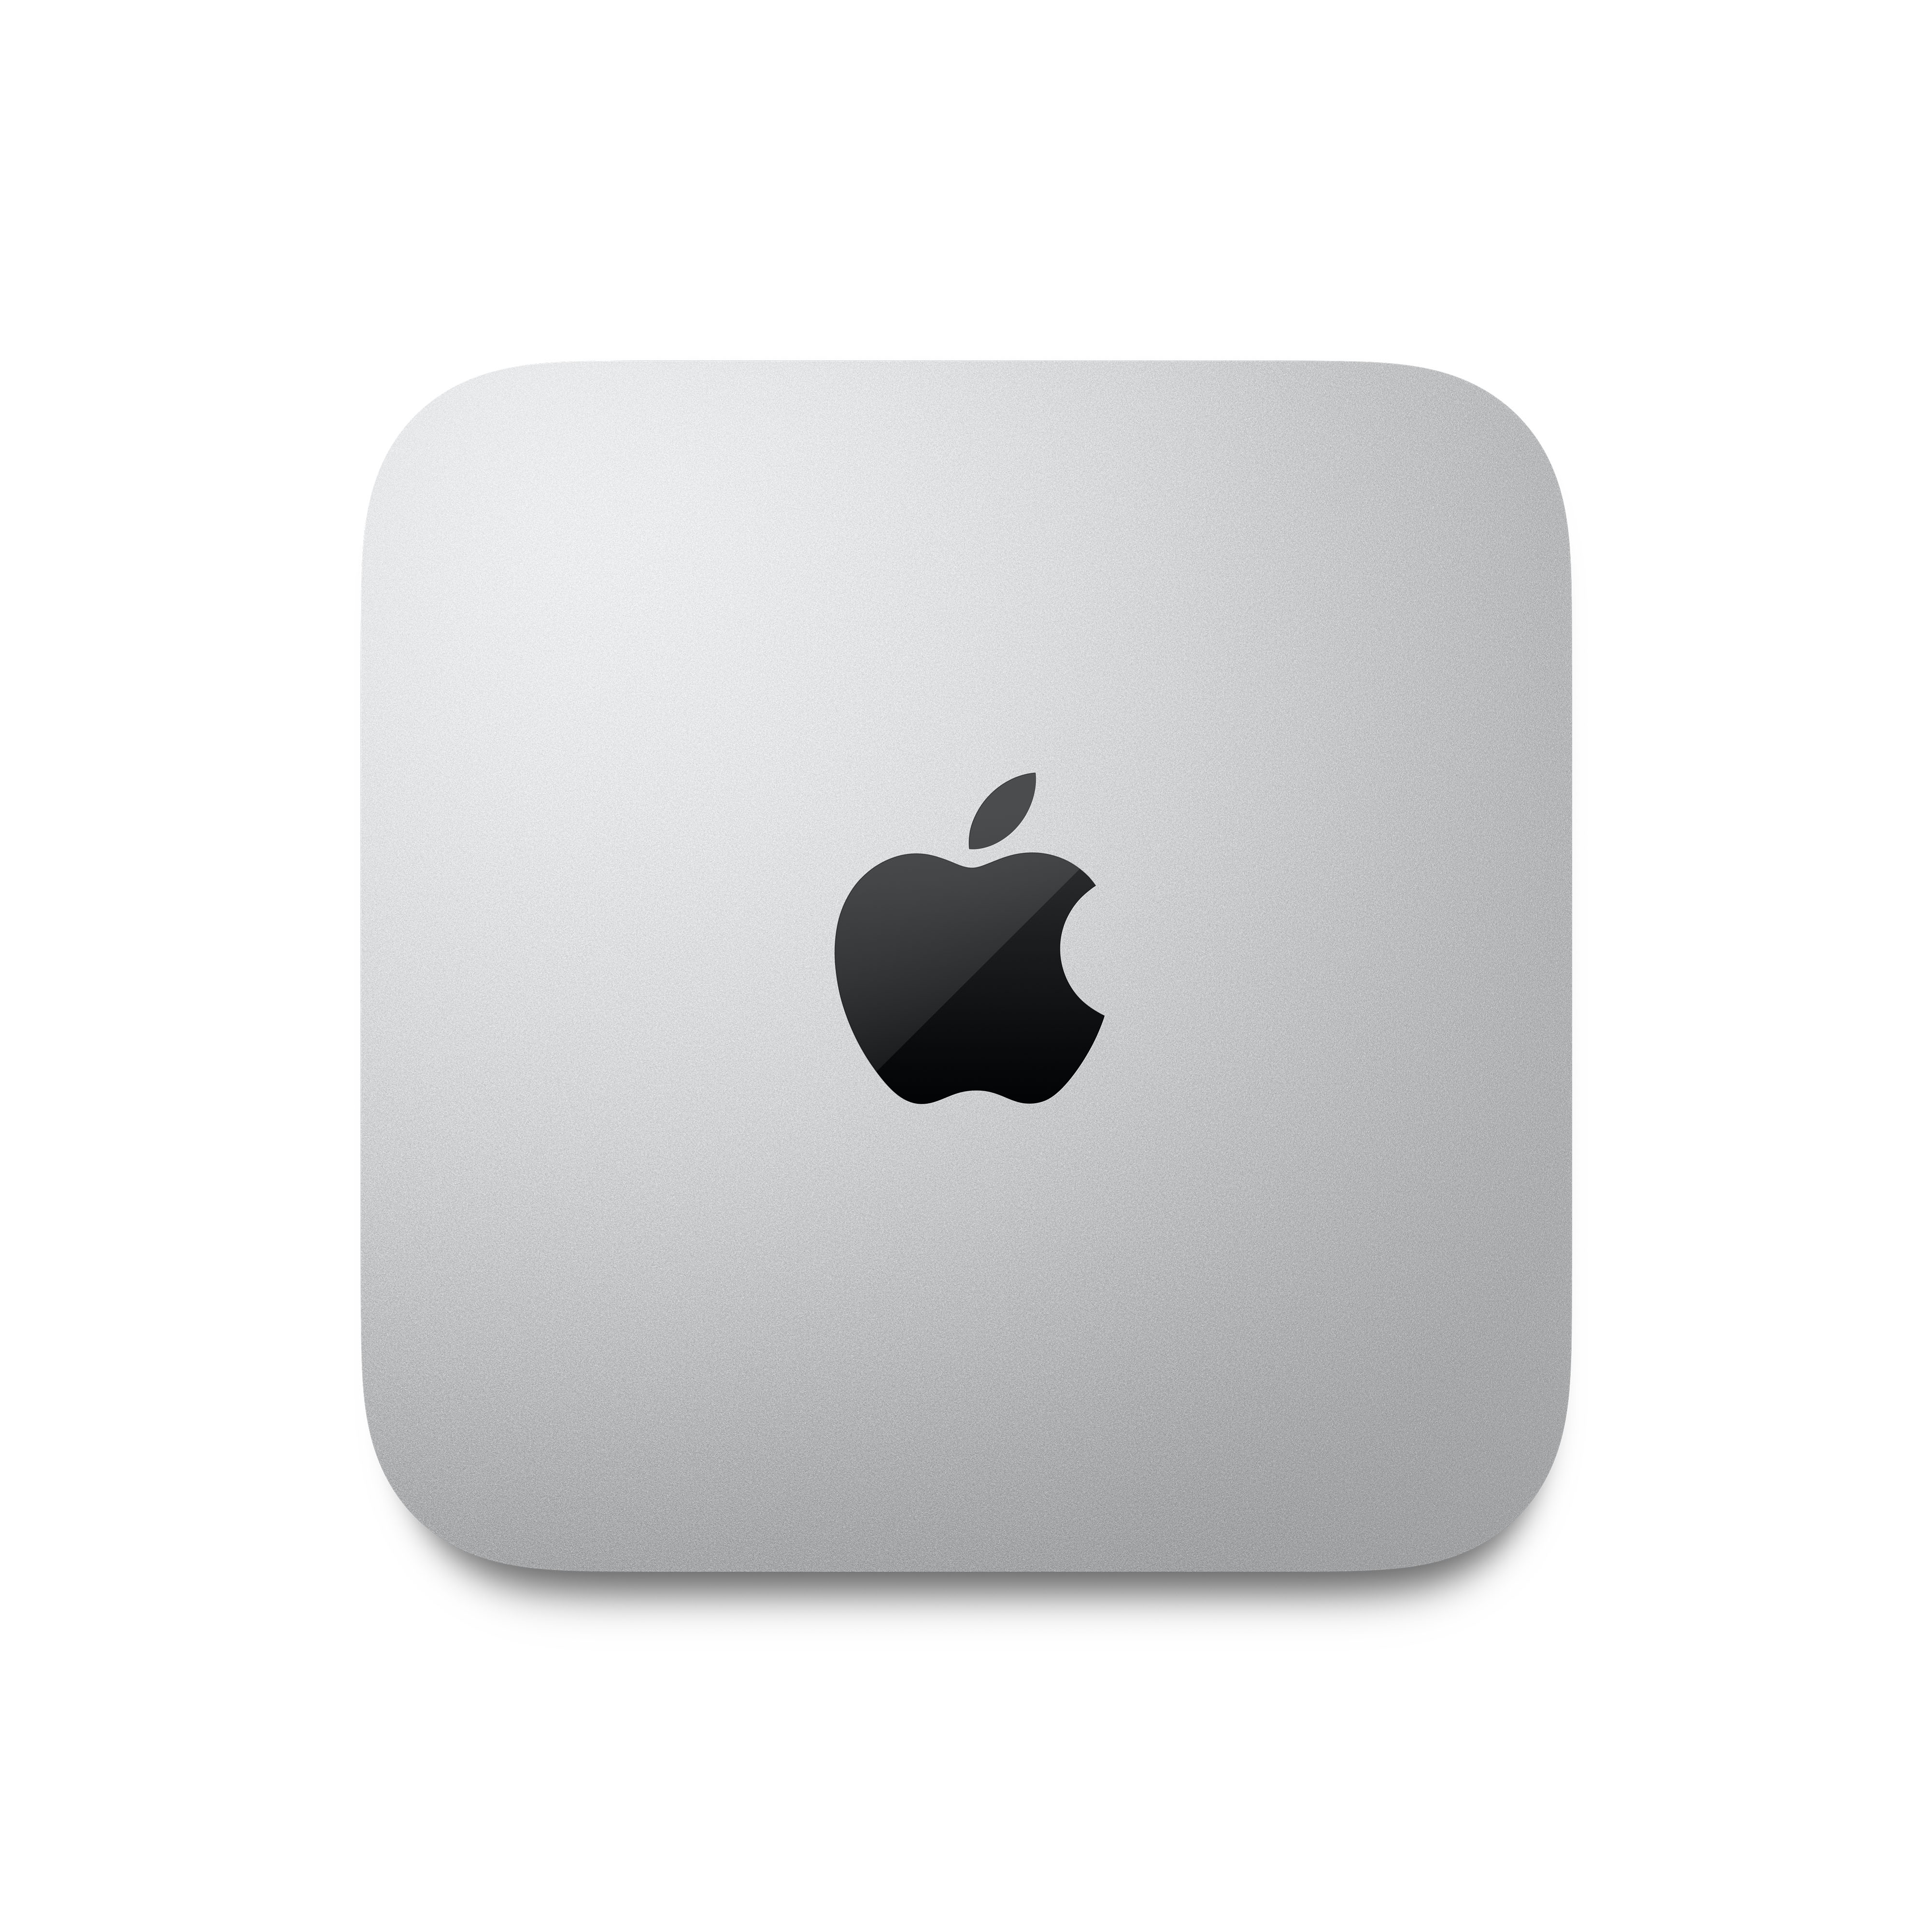 Nuevos Apple Mac mini con chip M1